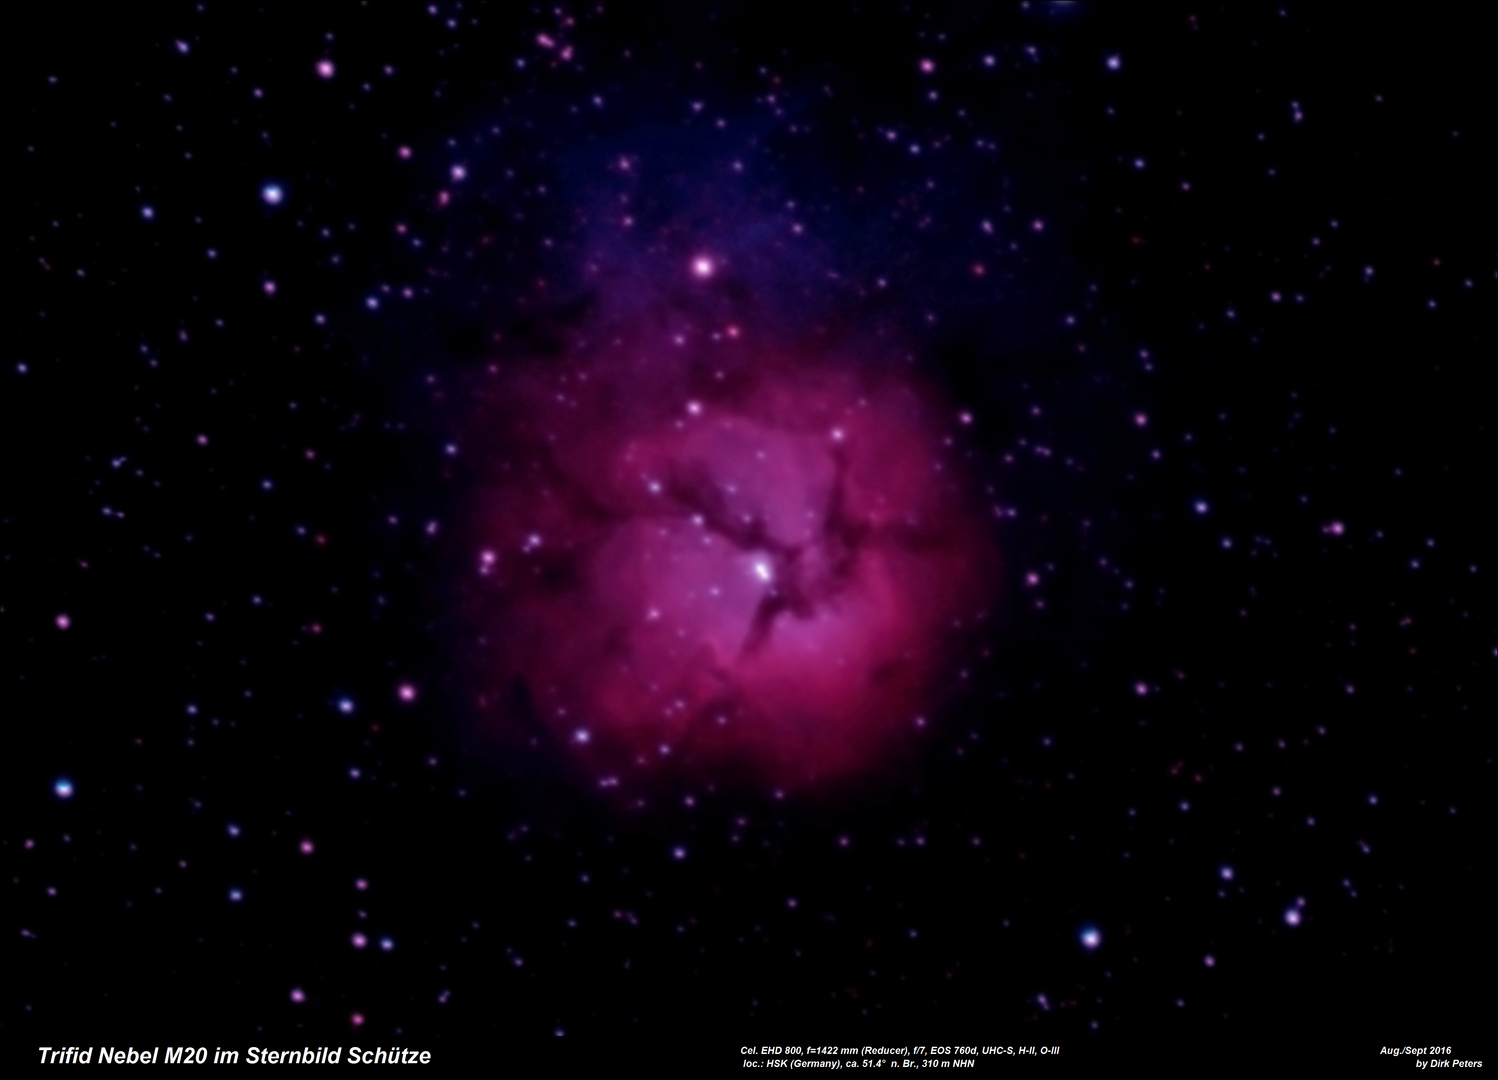 ... der Trifidnebel (M20) im Sternbild Schütze